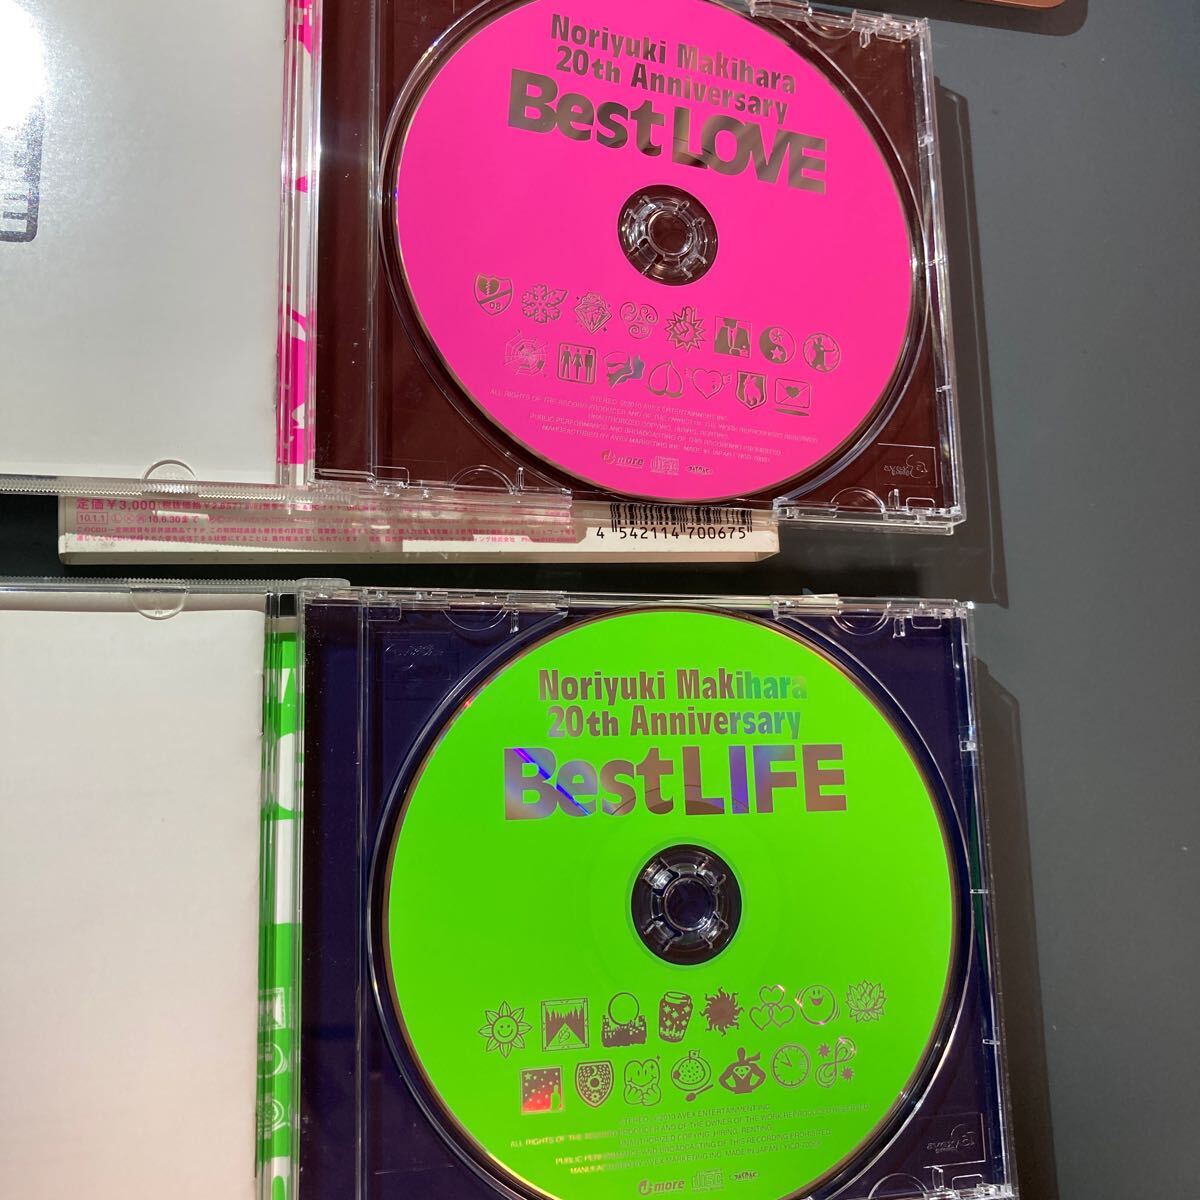 【CD】槇原敬之 Noriyuki Makihara 20th Anniversary 「Best LOVE」「Best Life」 2枚セットの画像3